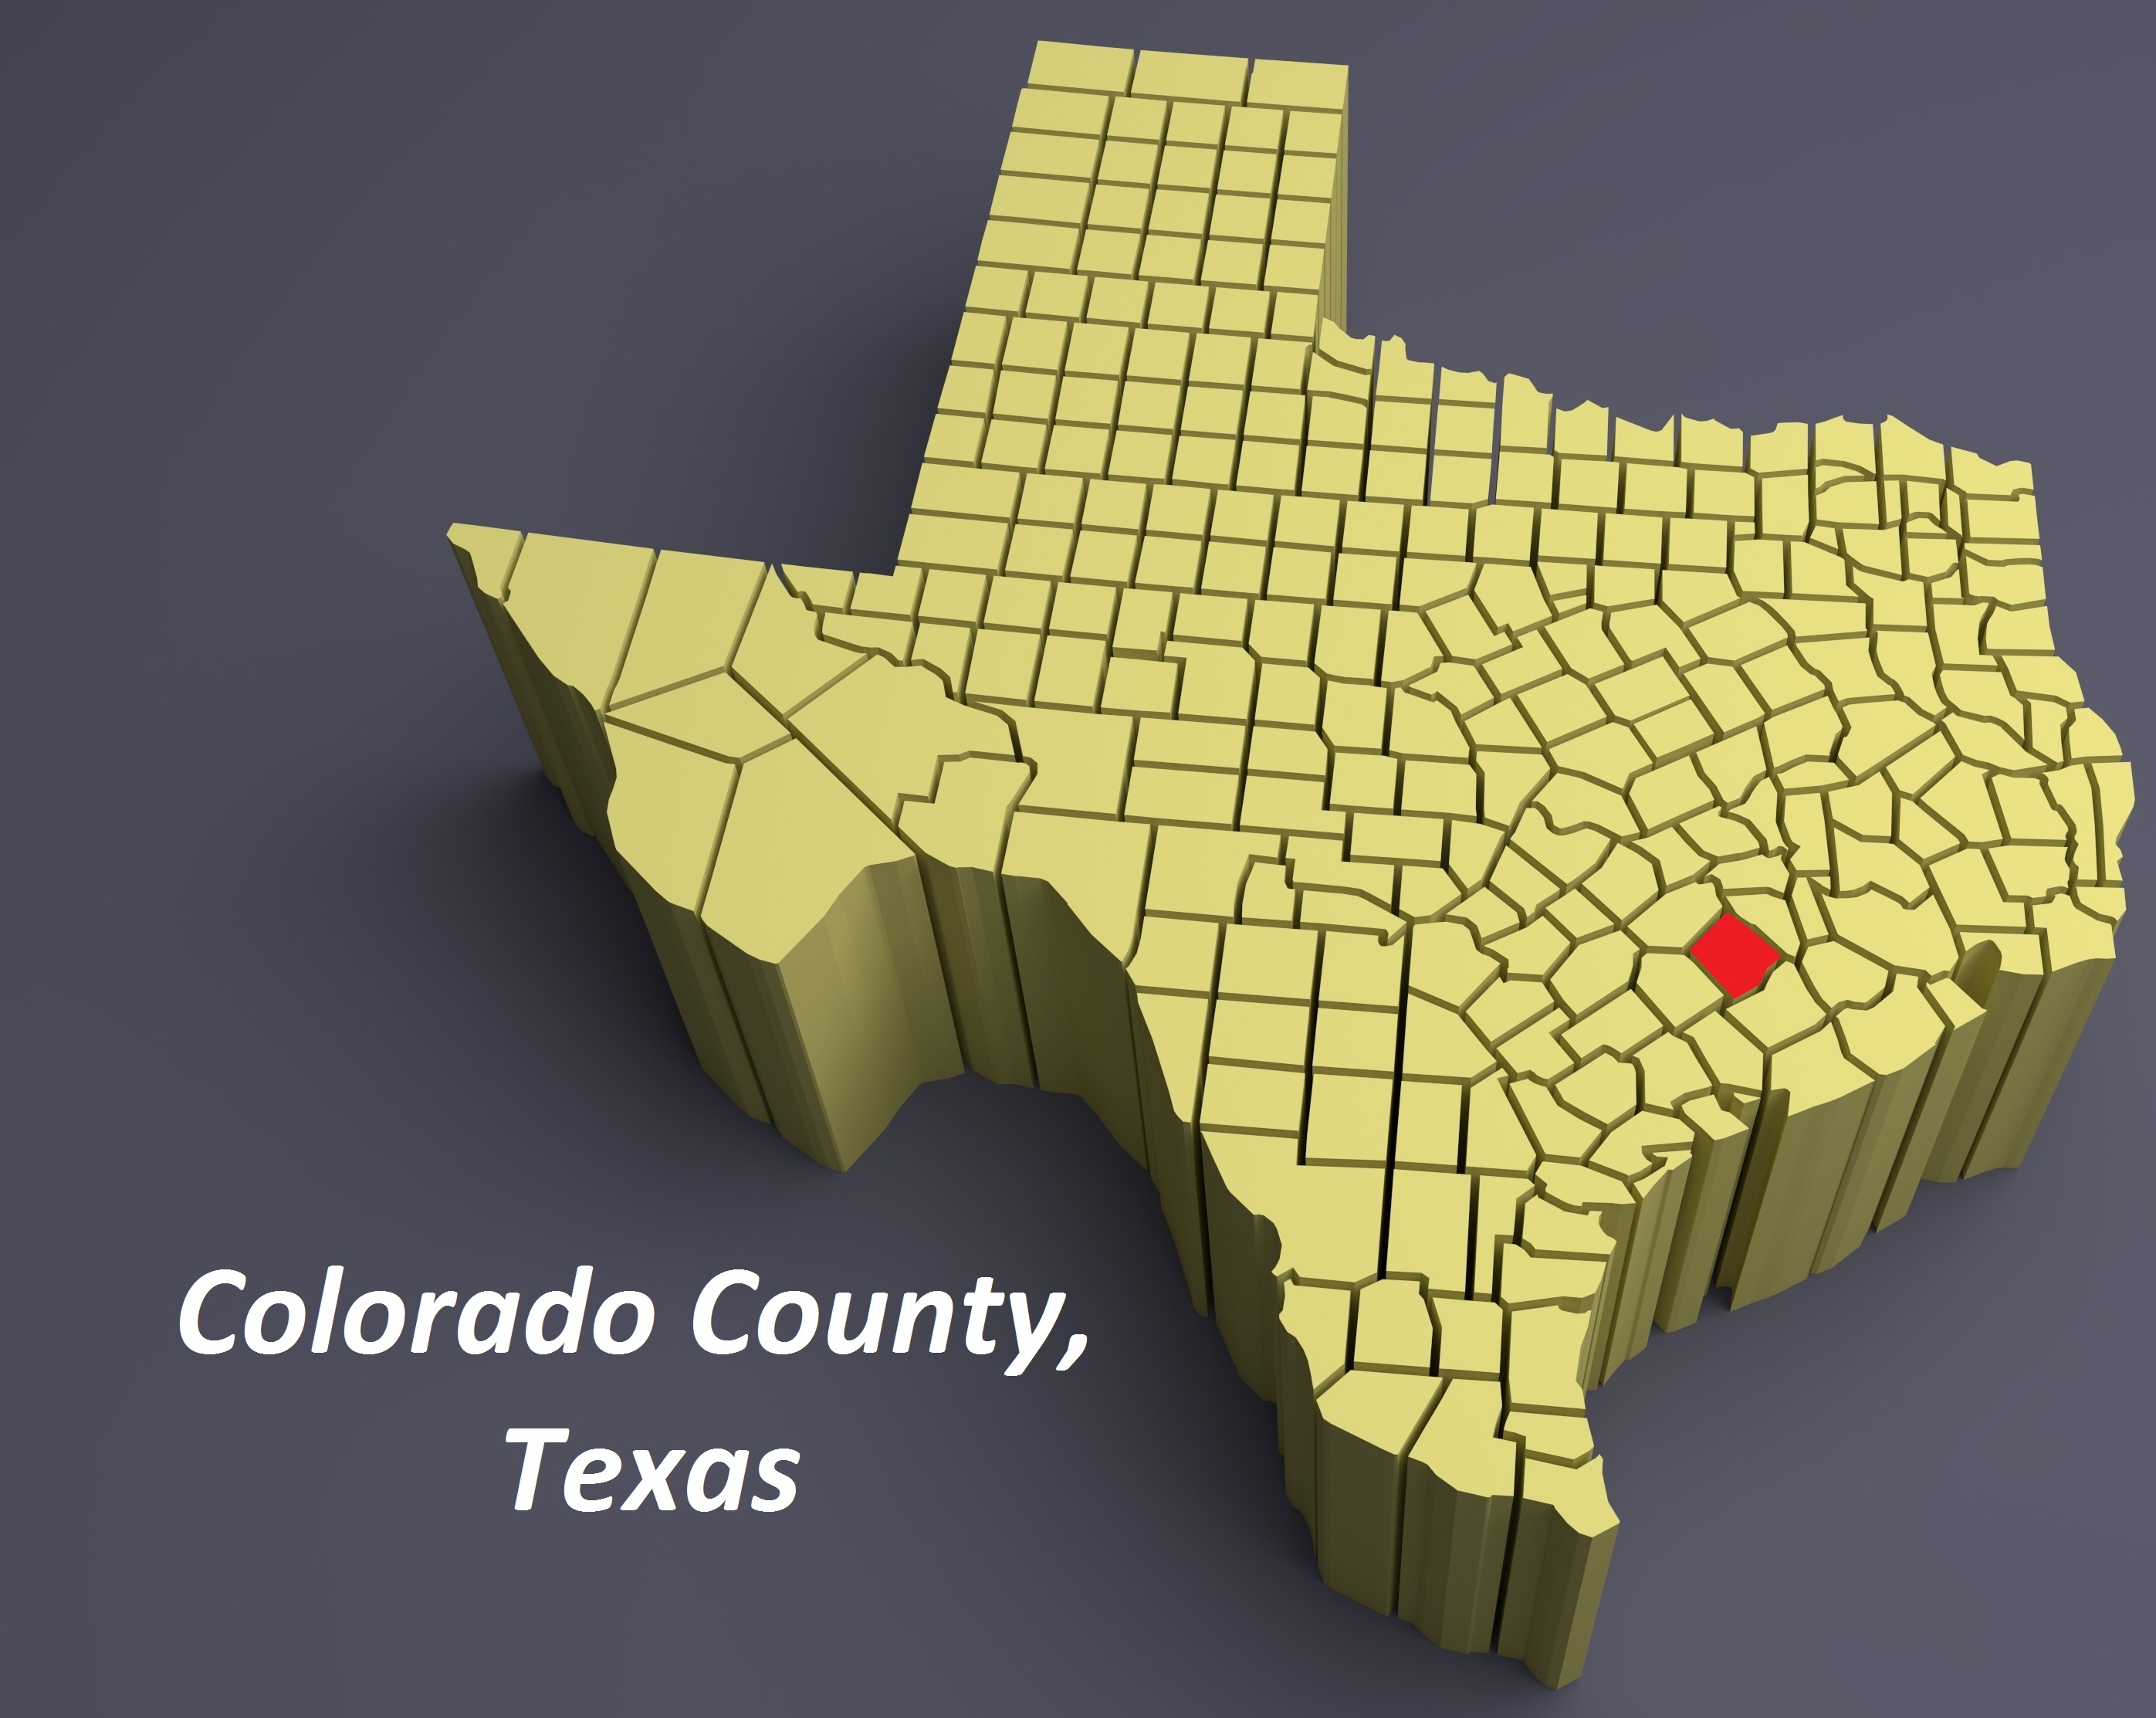 Colorado County, Texas, map